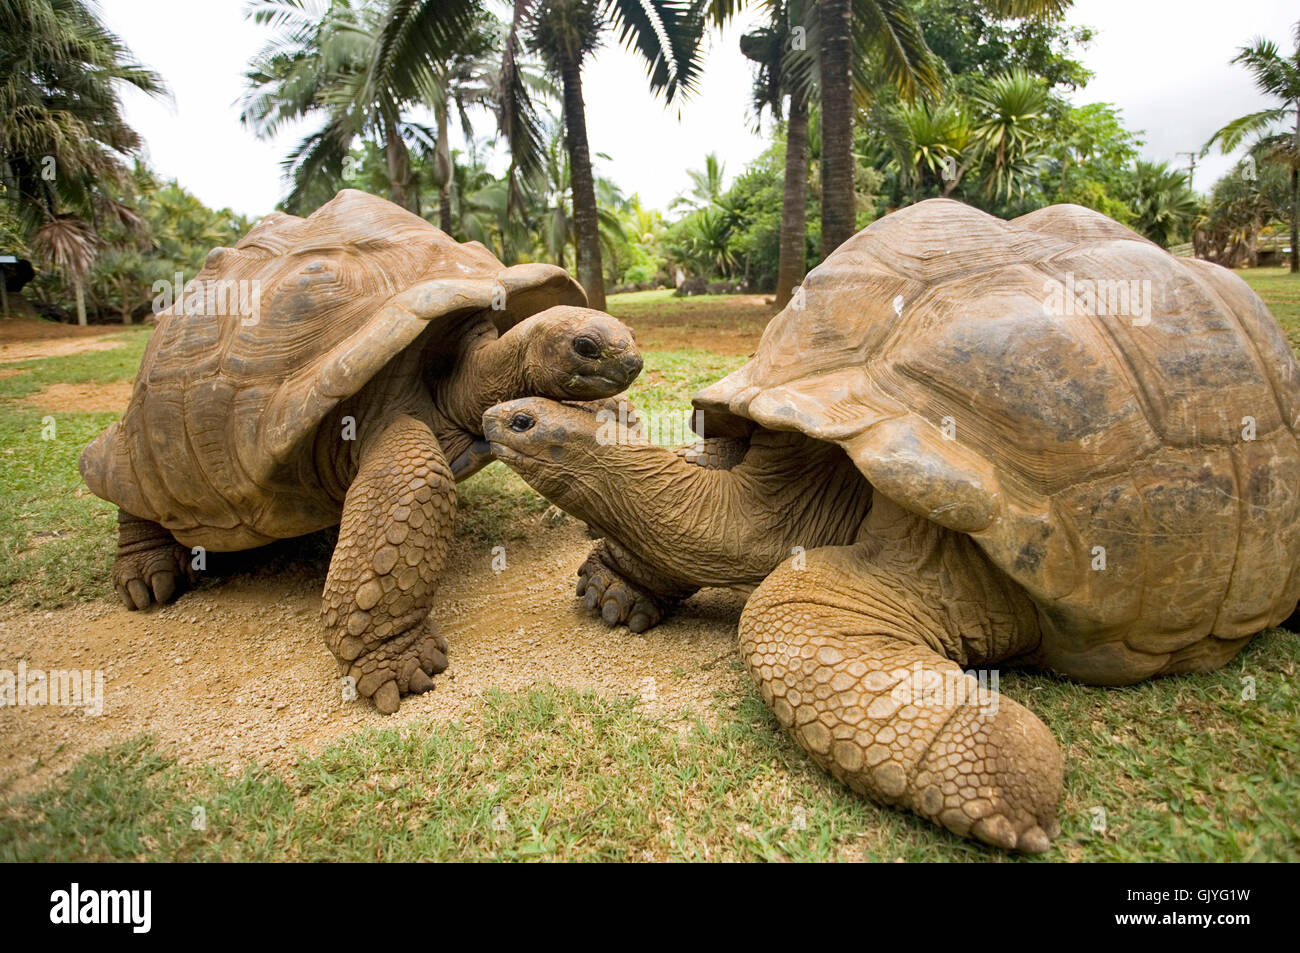 galapagos tortoises Stock Photo